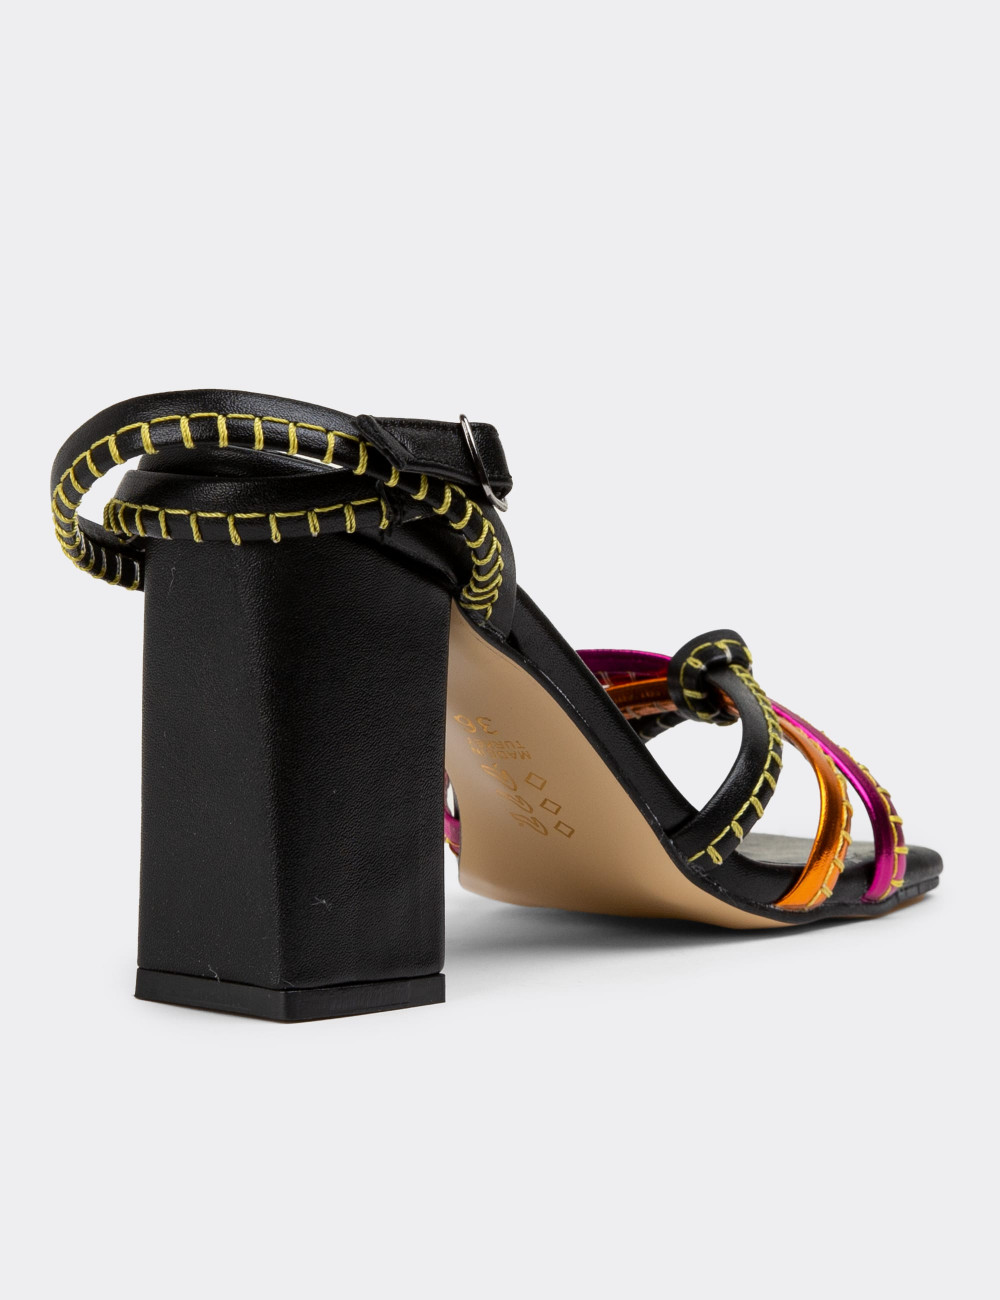 Siyah Topuklu Kadın Abiye Ayakkabı - 53004ZSYHC01